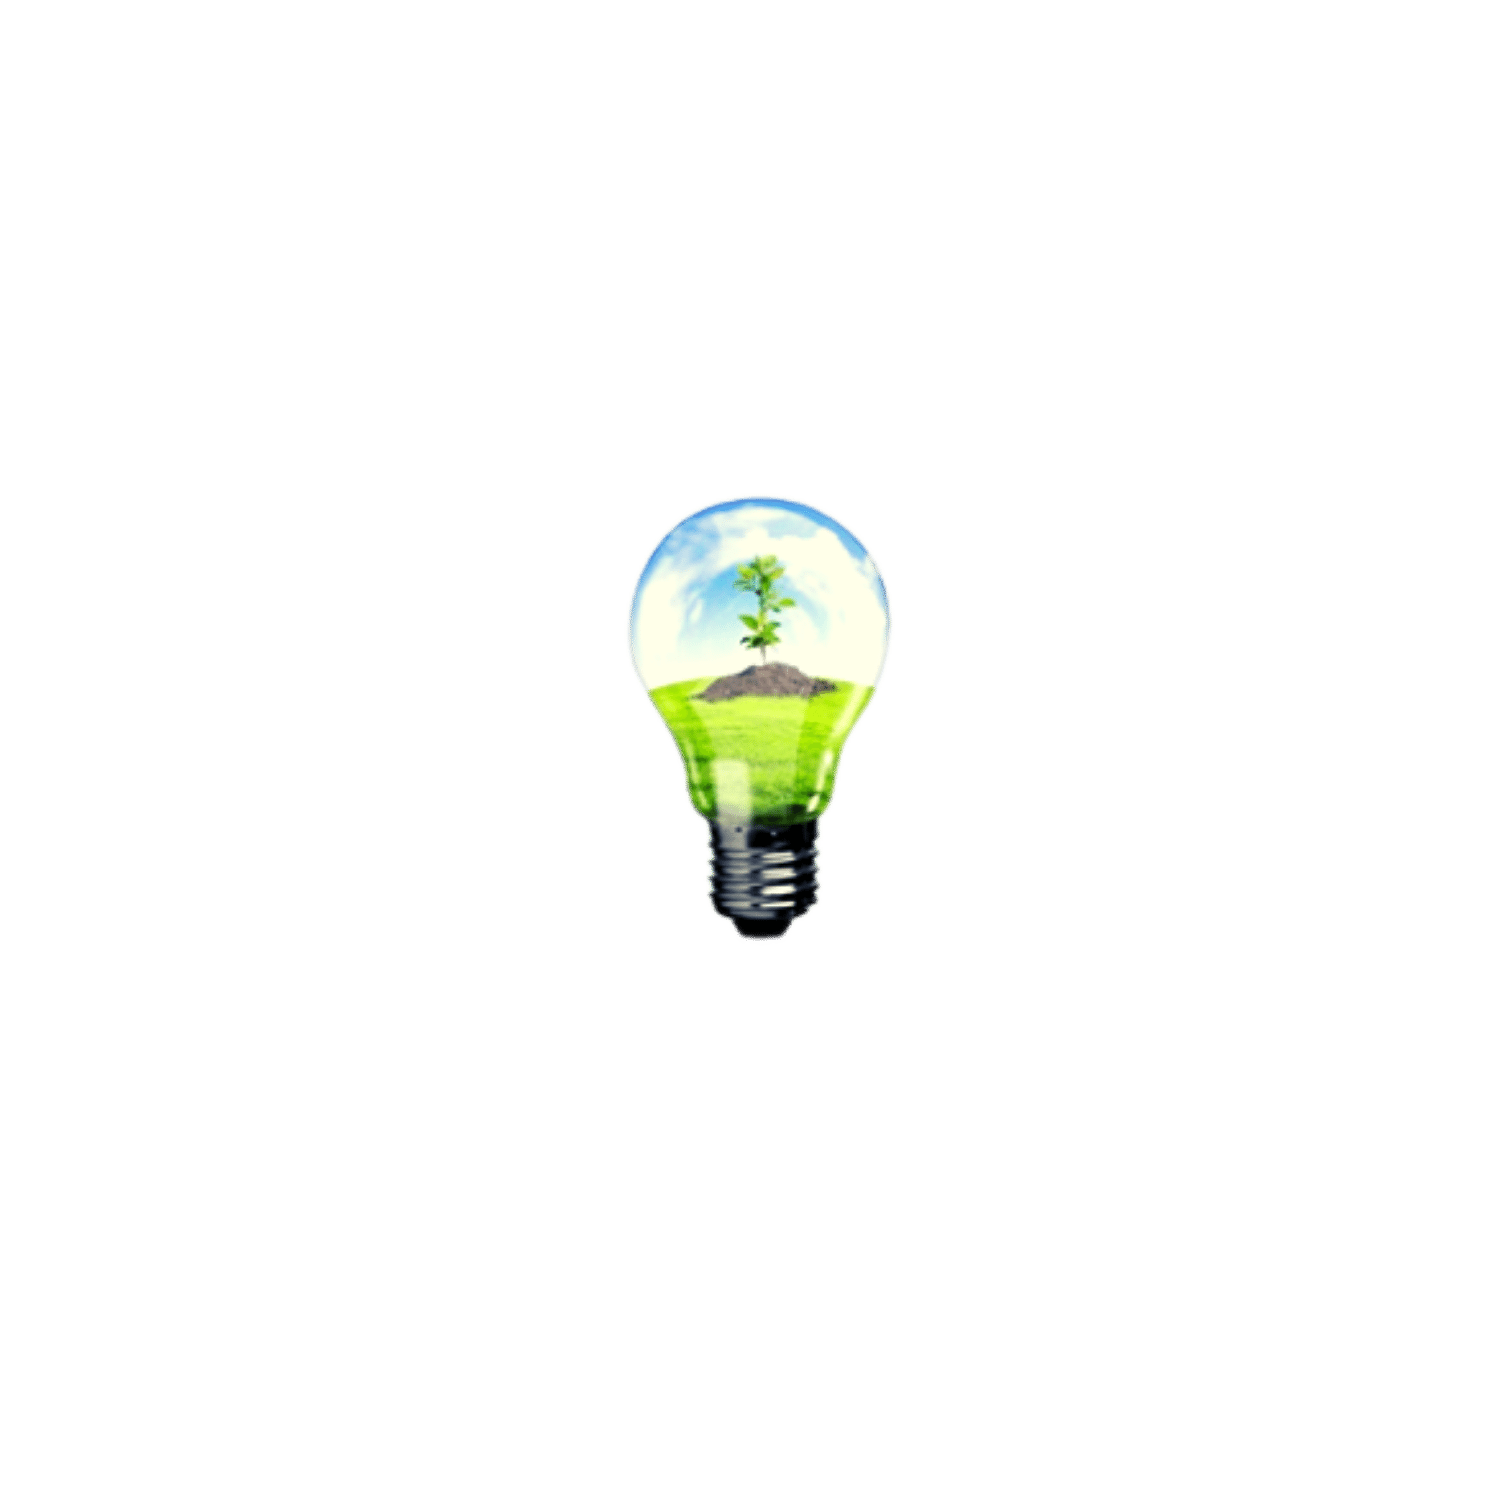 lightbulb with nature inside (Shutterstock)